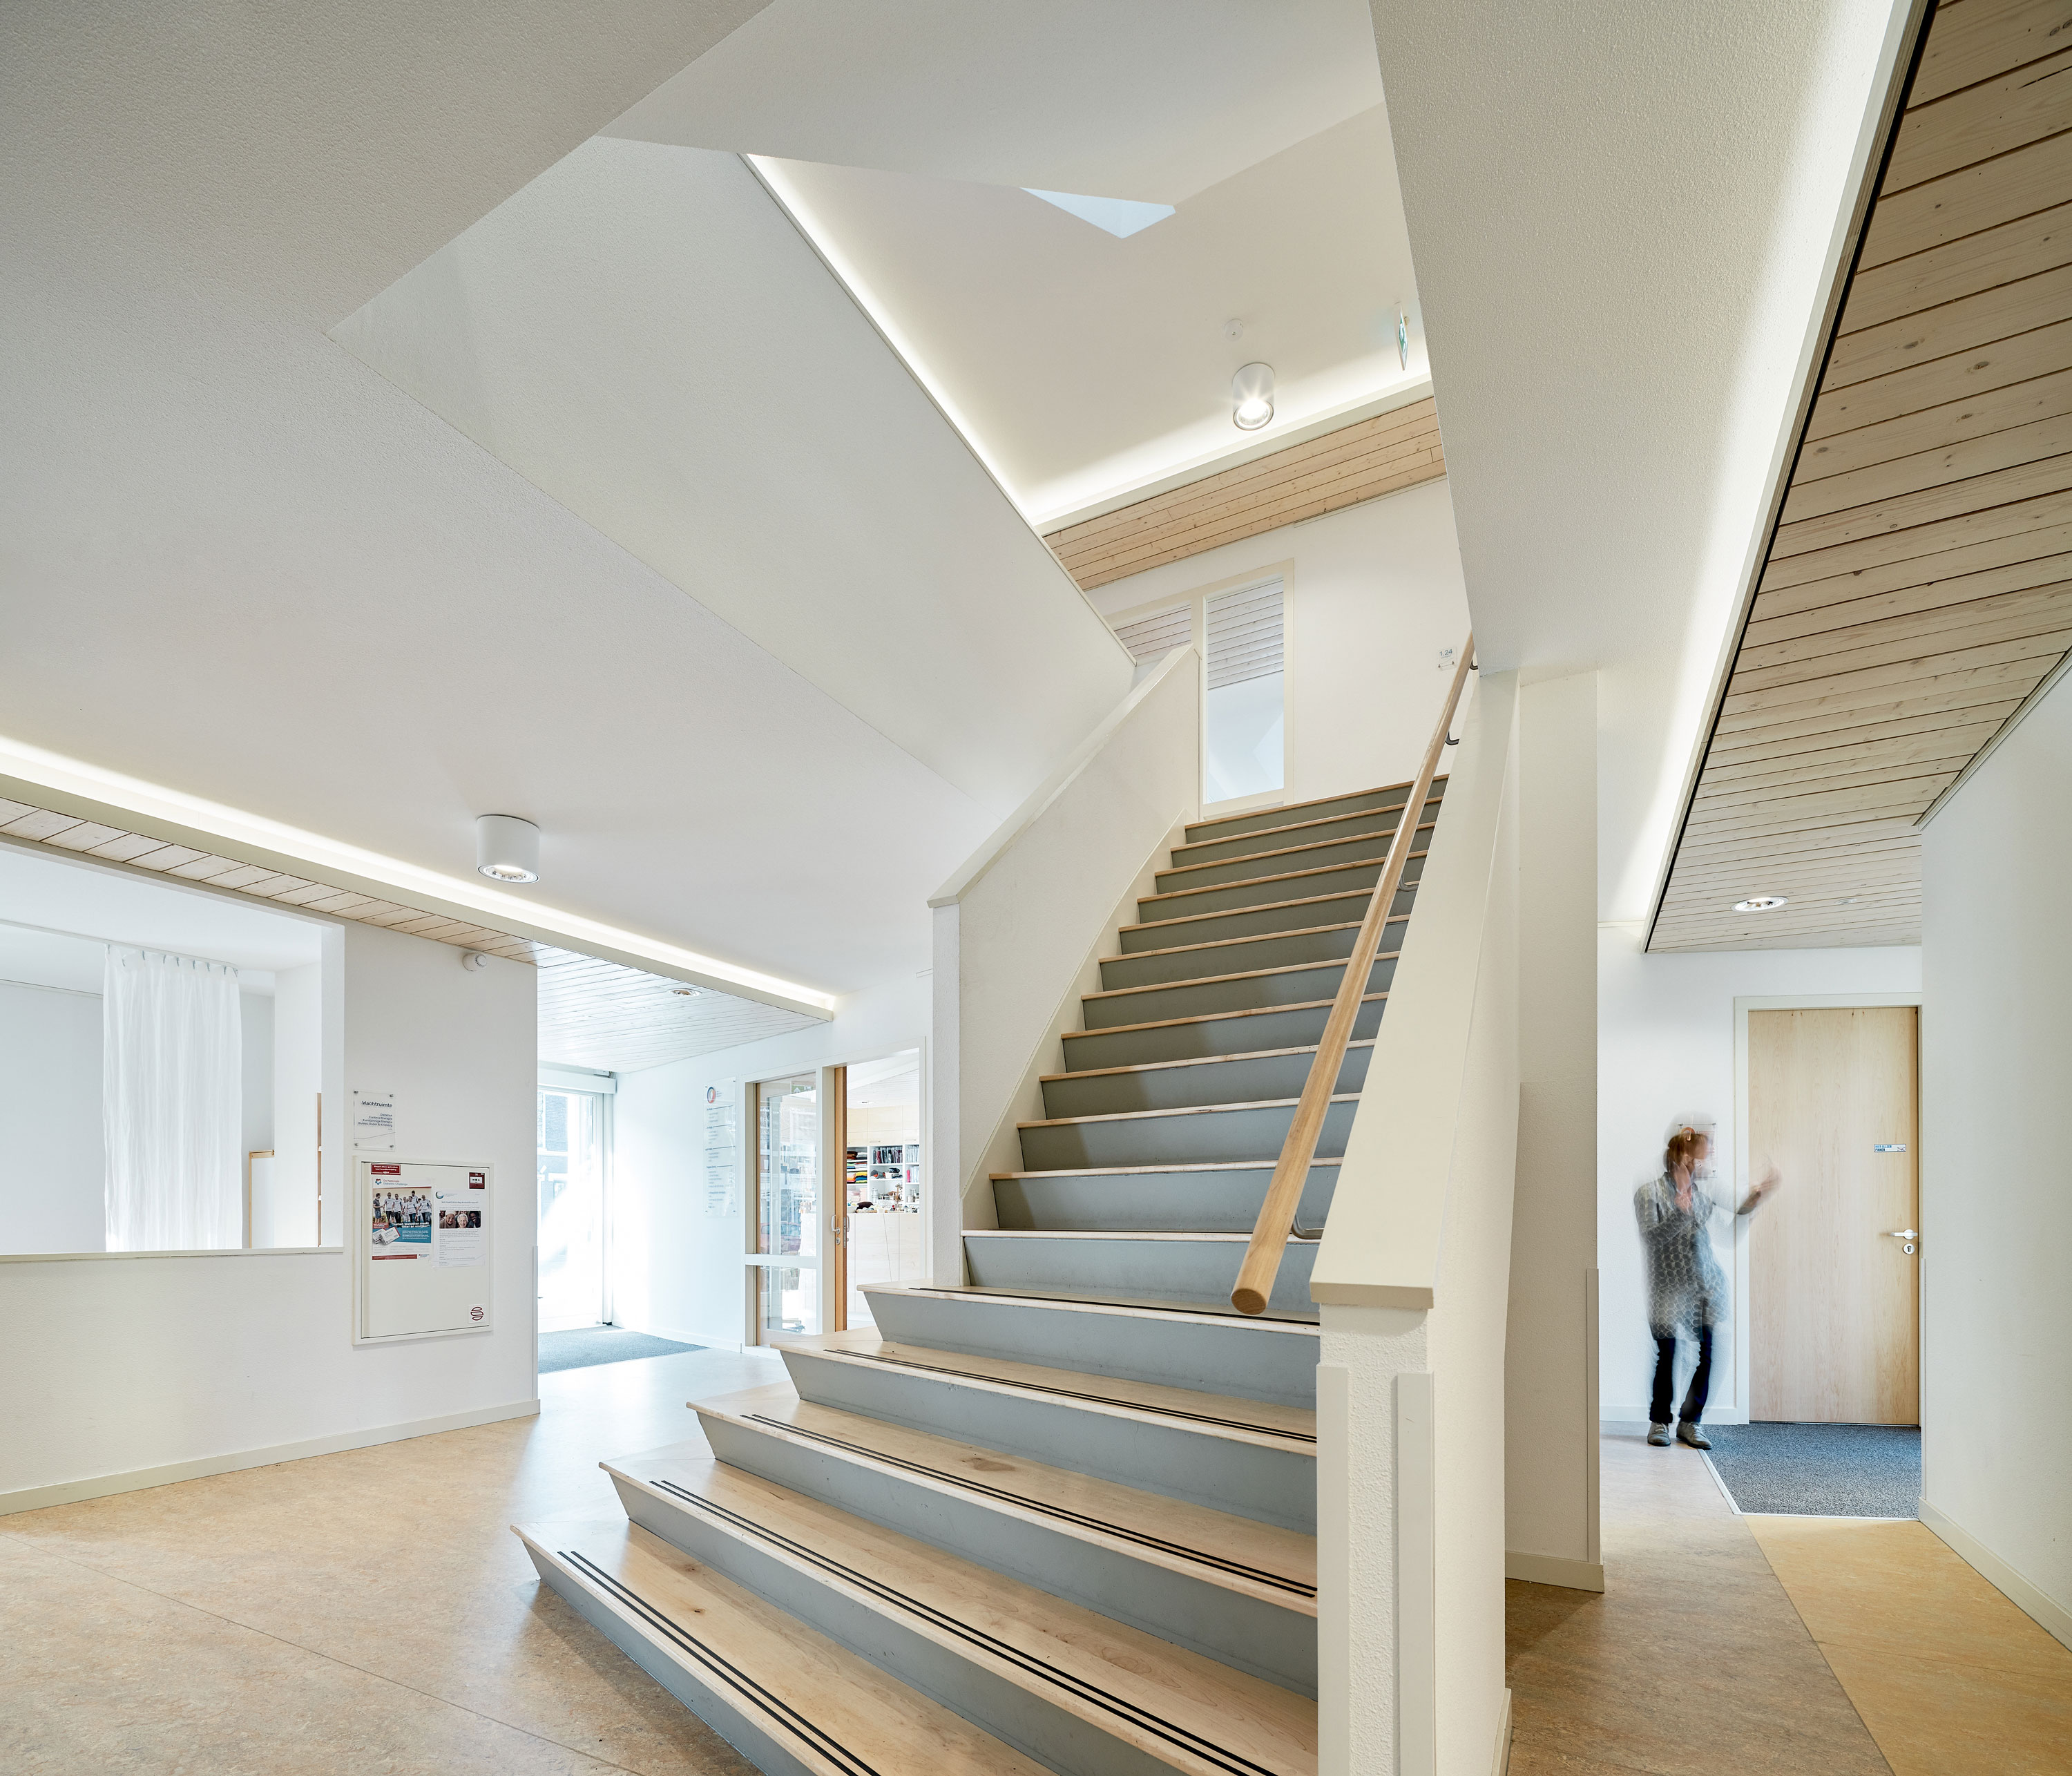 Neubau Gesundheitszentrum Haarlem